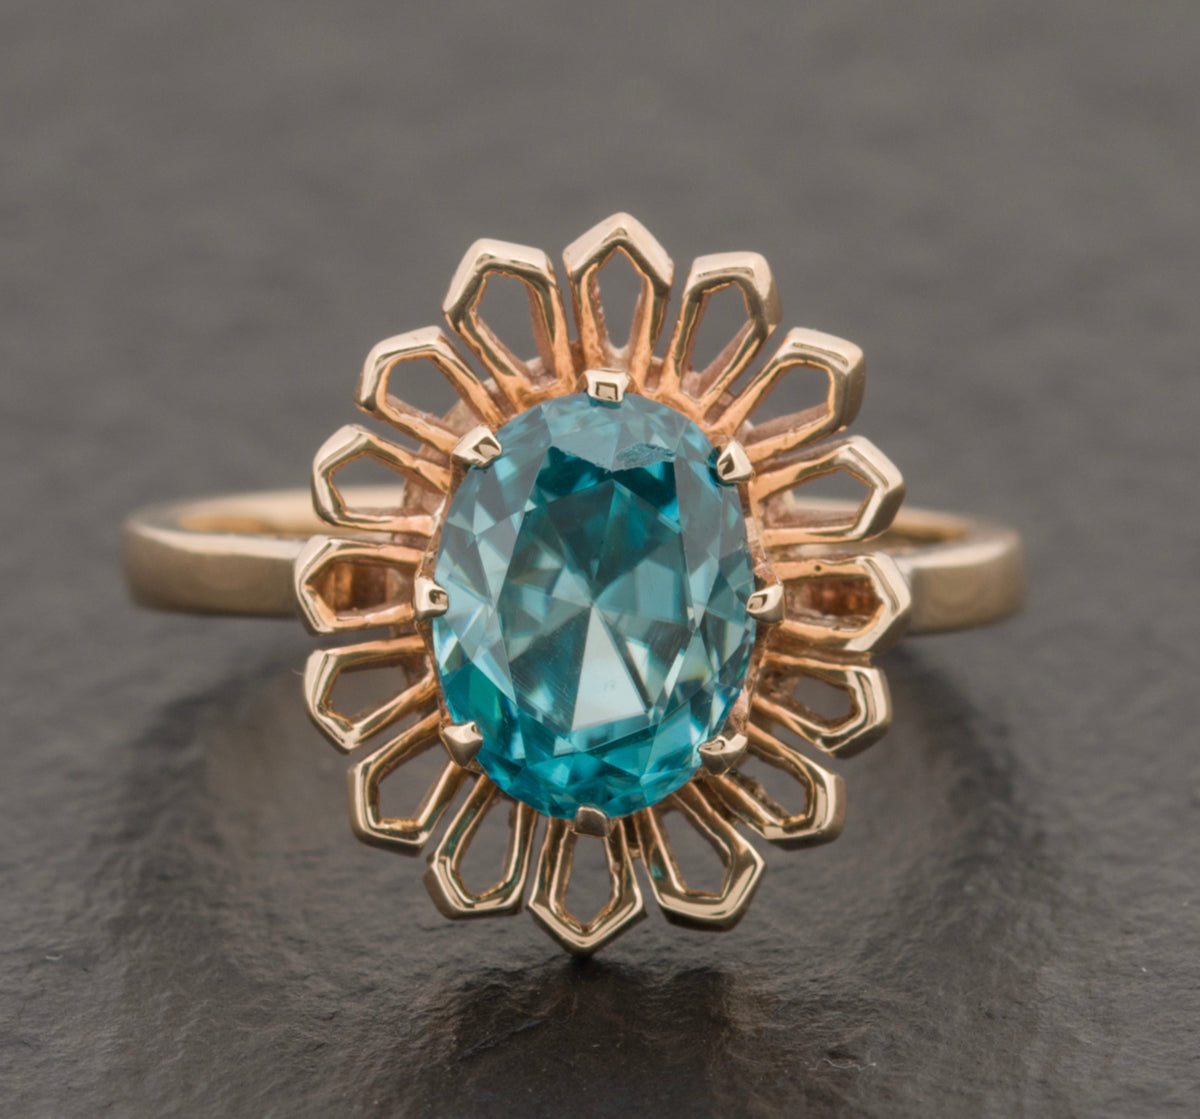 Vintage 9ct Gold & Natural Blue Zircon Ring 1960's Modernist Design (A1527)